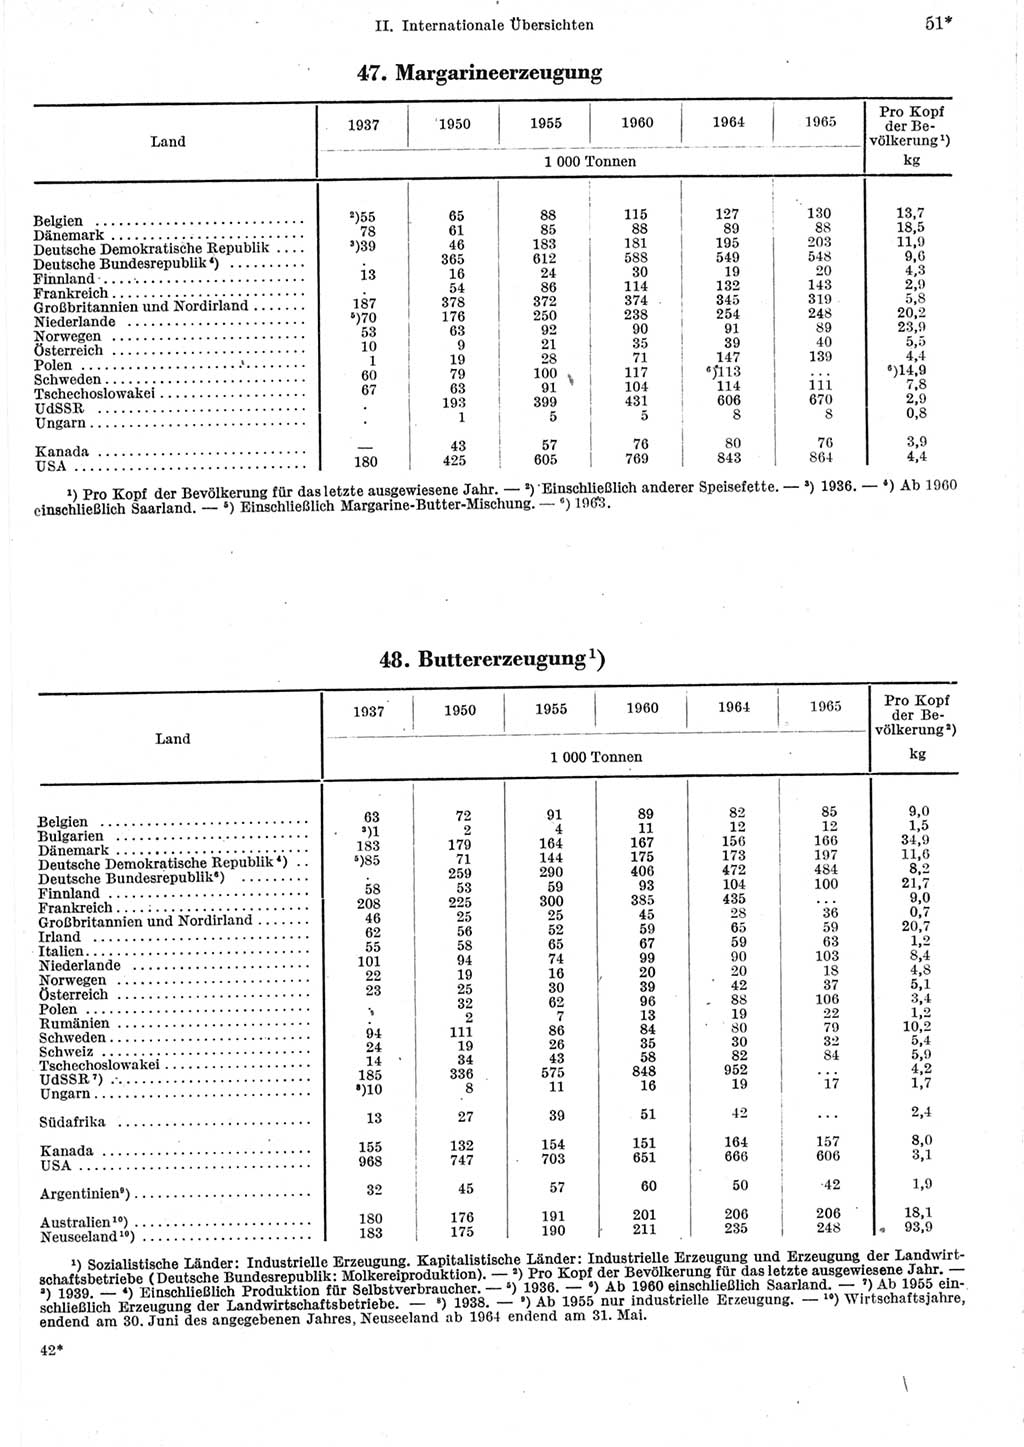 Statistisches Jahrbuch der Deutschen Demokratischen Republik (DDR) 1967, Seite 51 (Stat. Jb. DDR 1967, S. 51)